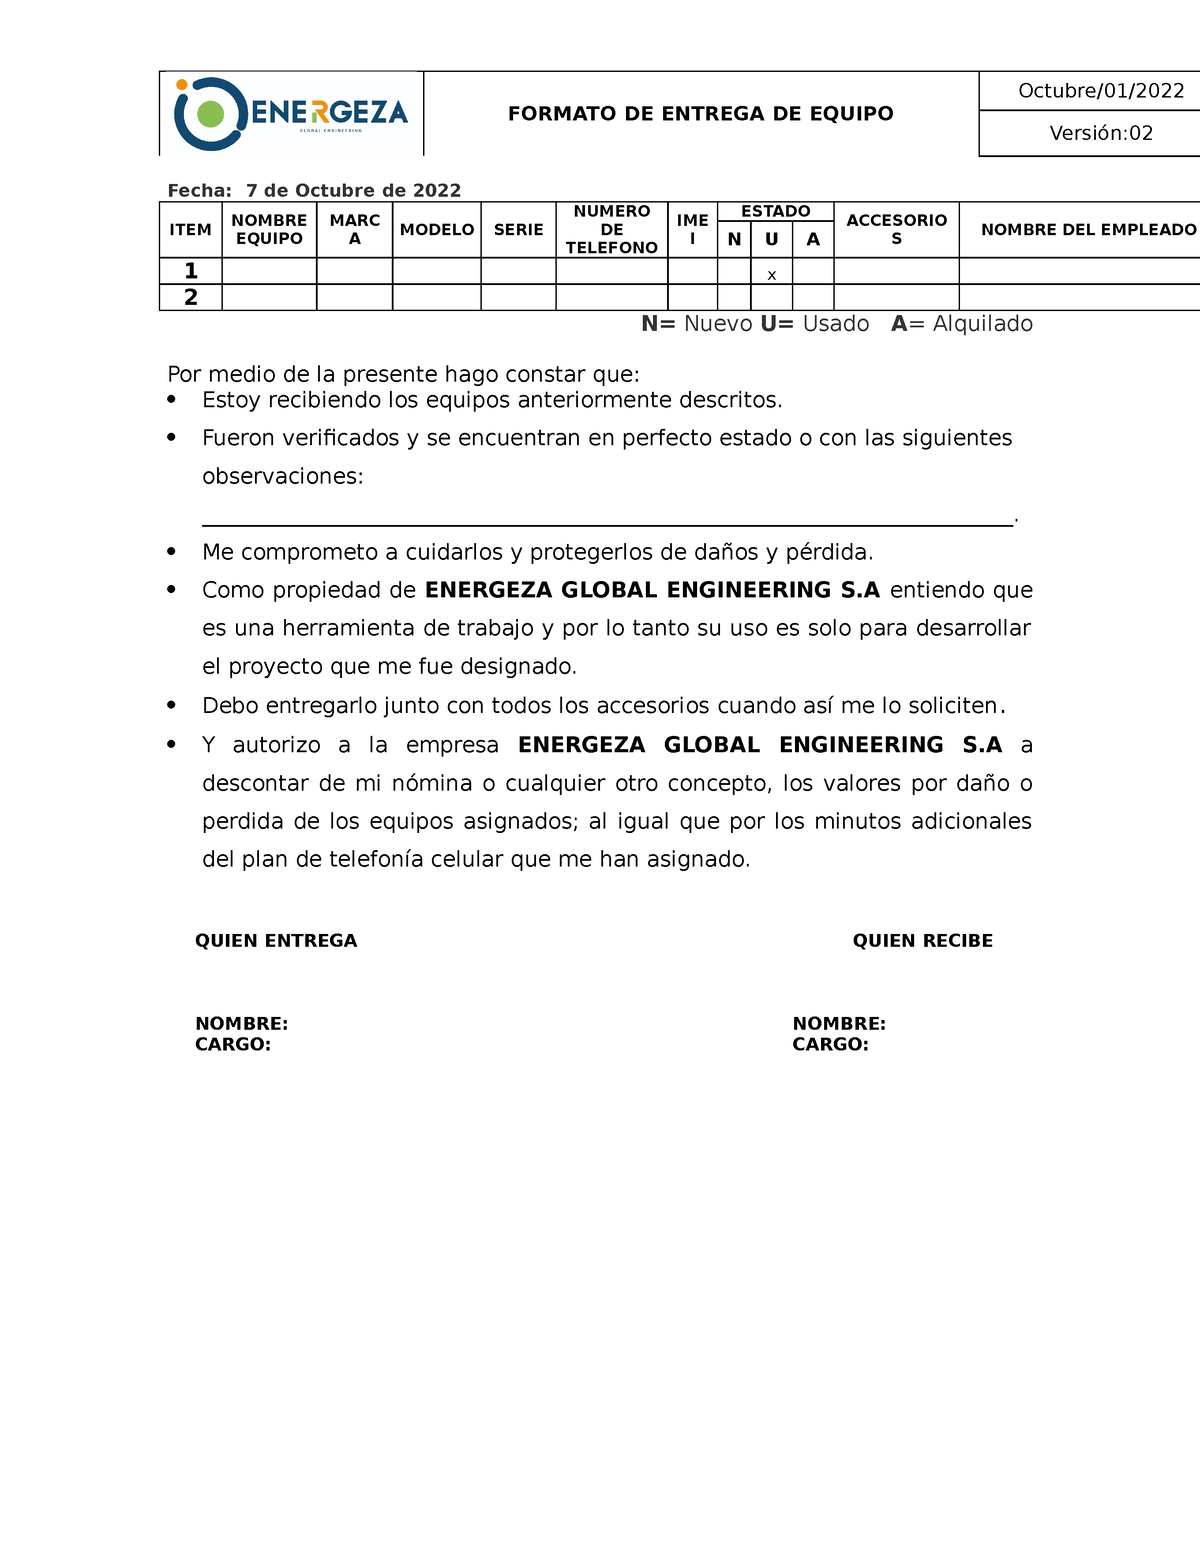 Ga Acta Entrega Y Devolución De Equipos Formato De Entrega De Equipo Octubre01 Versión 0613